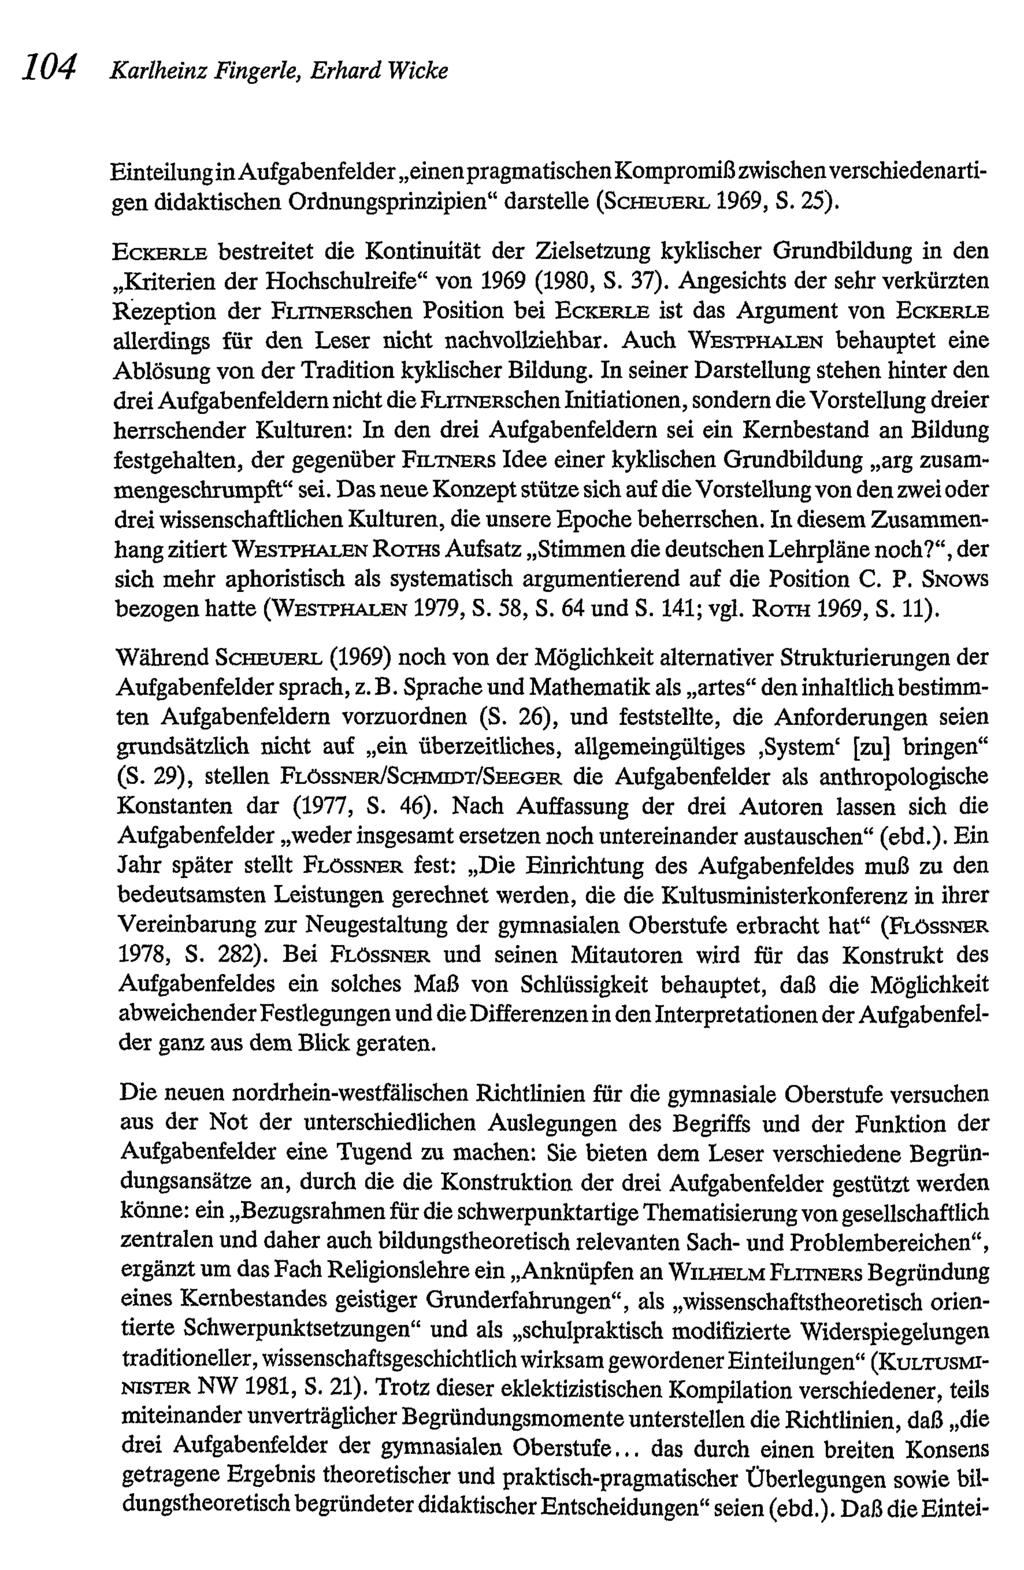 104 Karlheinz Fingerle, ErhardWicke EinteilunginAufgabenfelder"einenpragmatischenKompromißzwischenverschiedenartigen didaktischen Ordnungsprinzipien" darstelle (SCHEUERL 1969, S. 25).